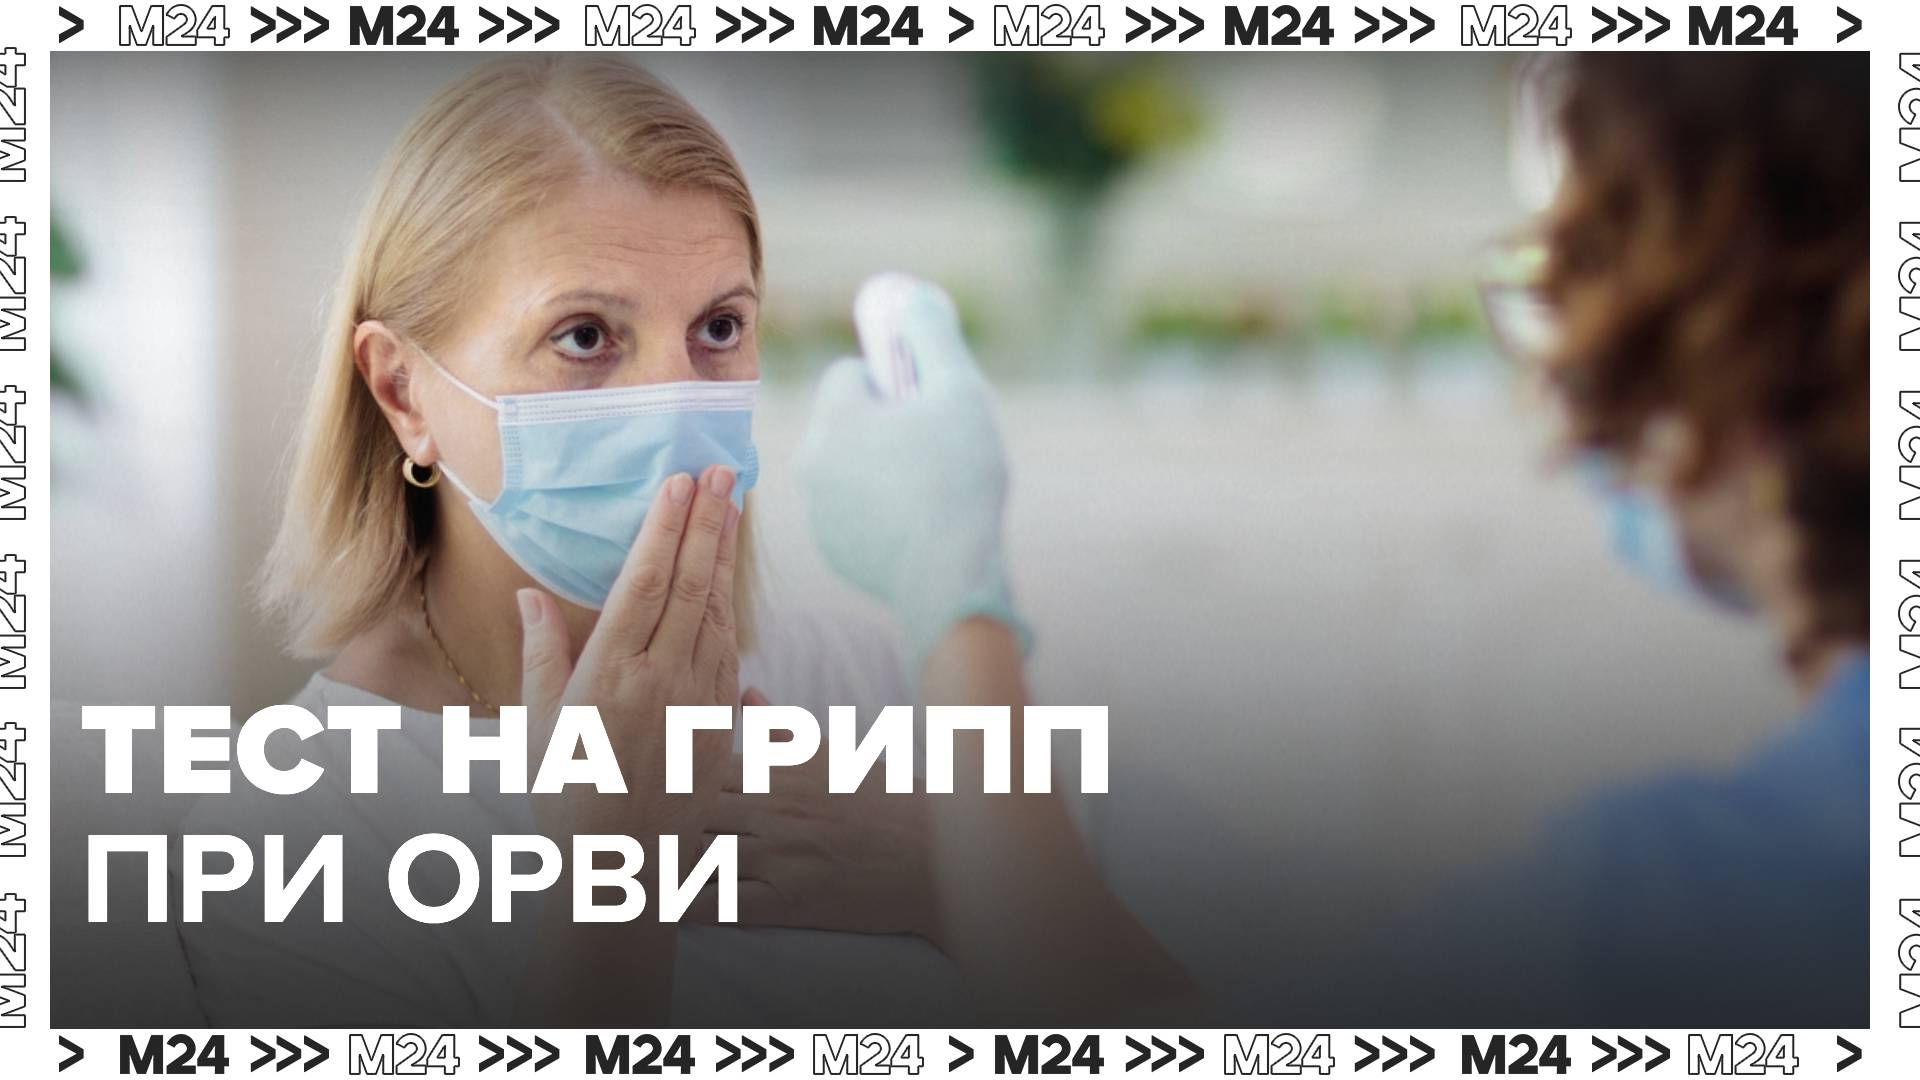 Грипп орви москва. Исследование гриппа. ОРВИ сейчас в Москве симптомы. Пациенты с признаками ОРВИ. Пандемия ОРВИ И гриппа.